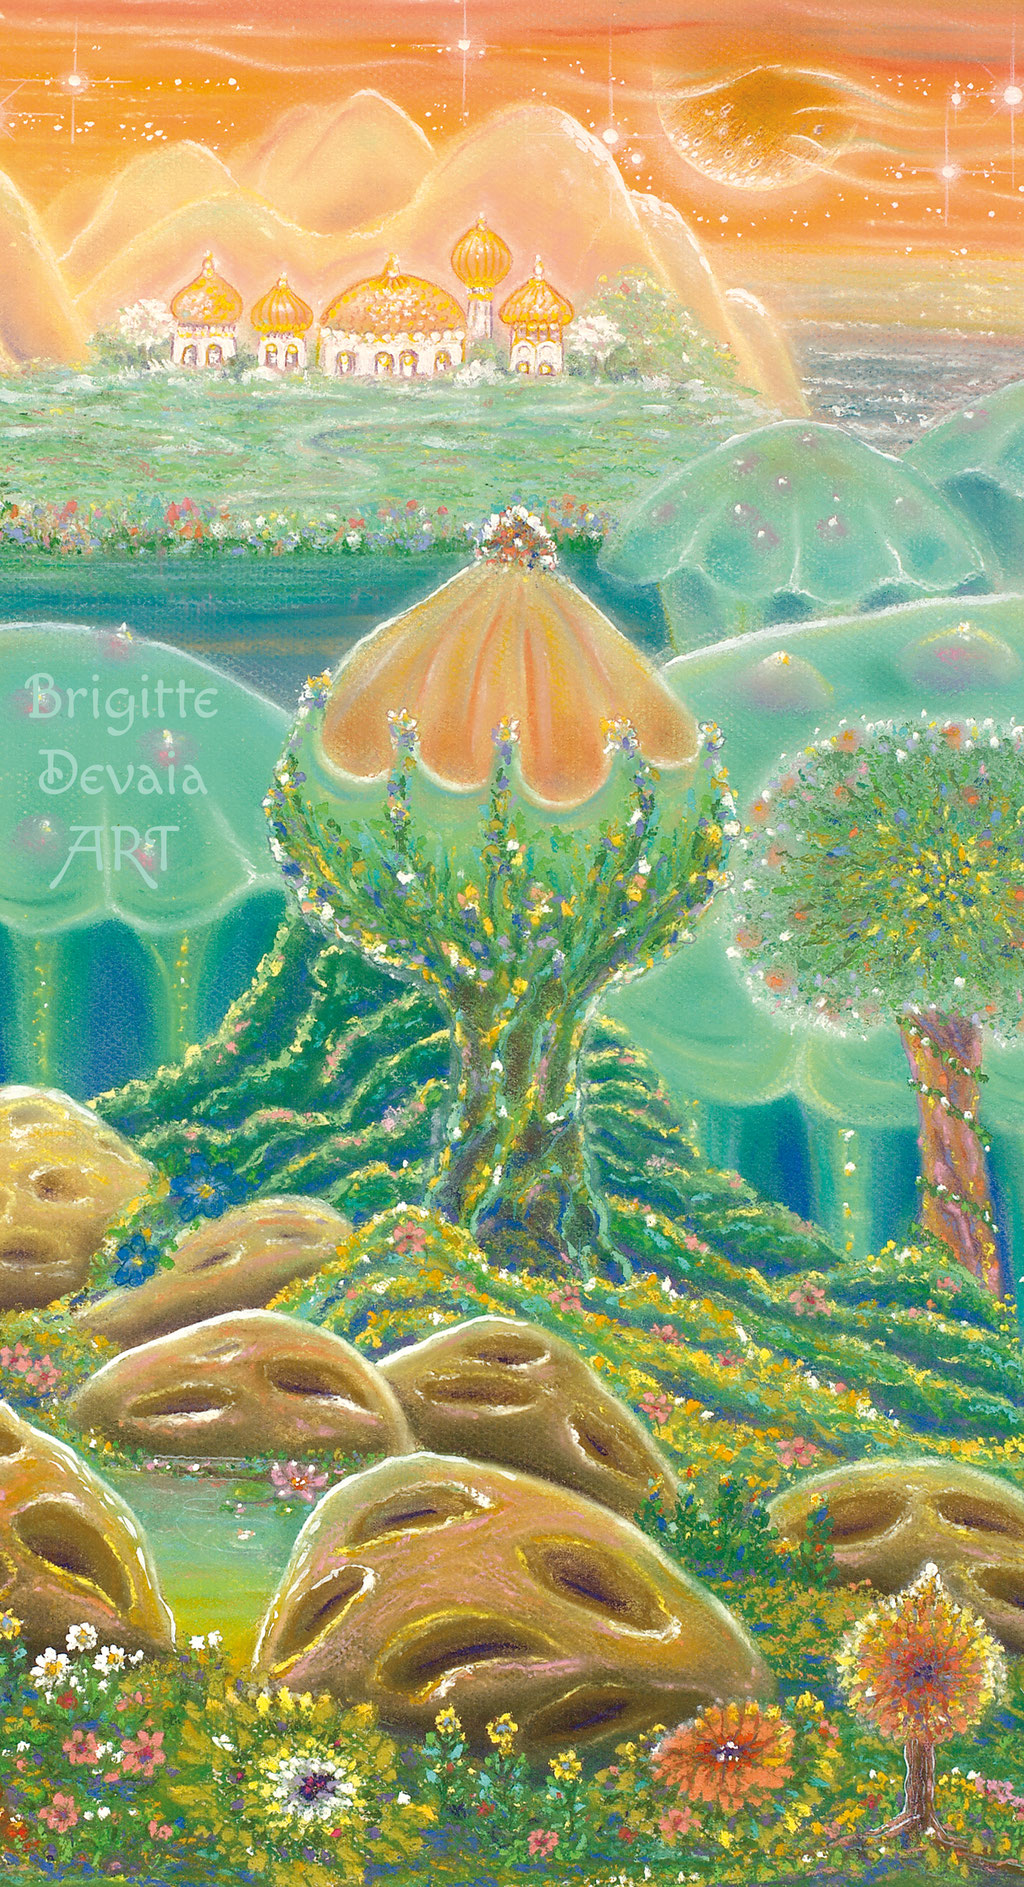 Brigitte-Devaia ART - Sternenwelt Venus - exotische Landschaft - Auschnitt Baum